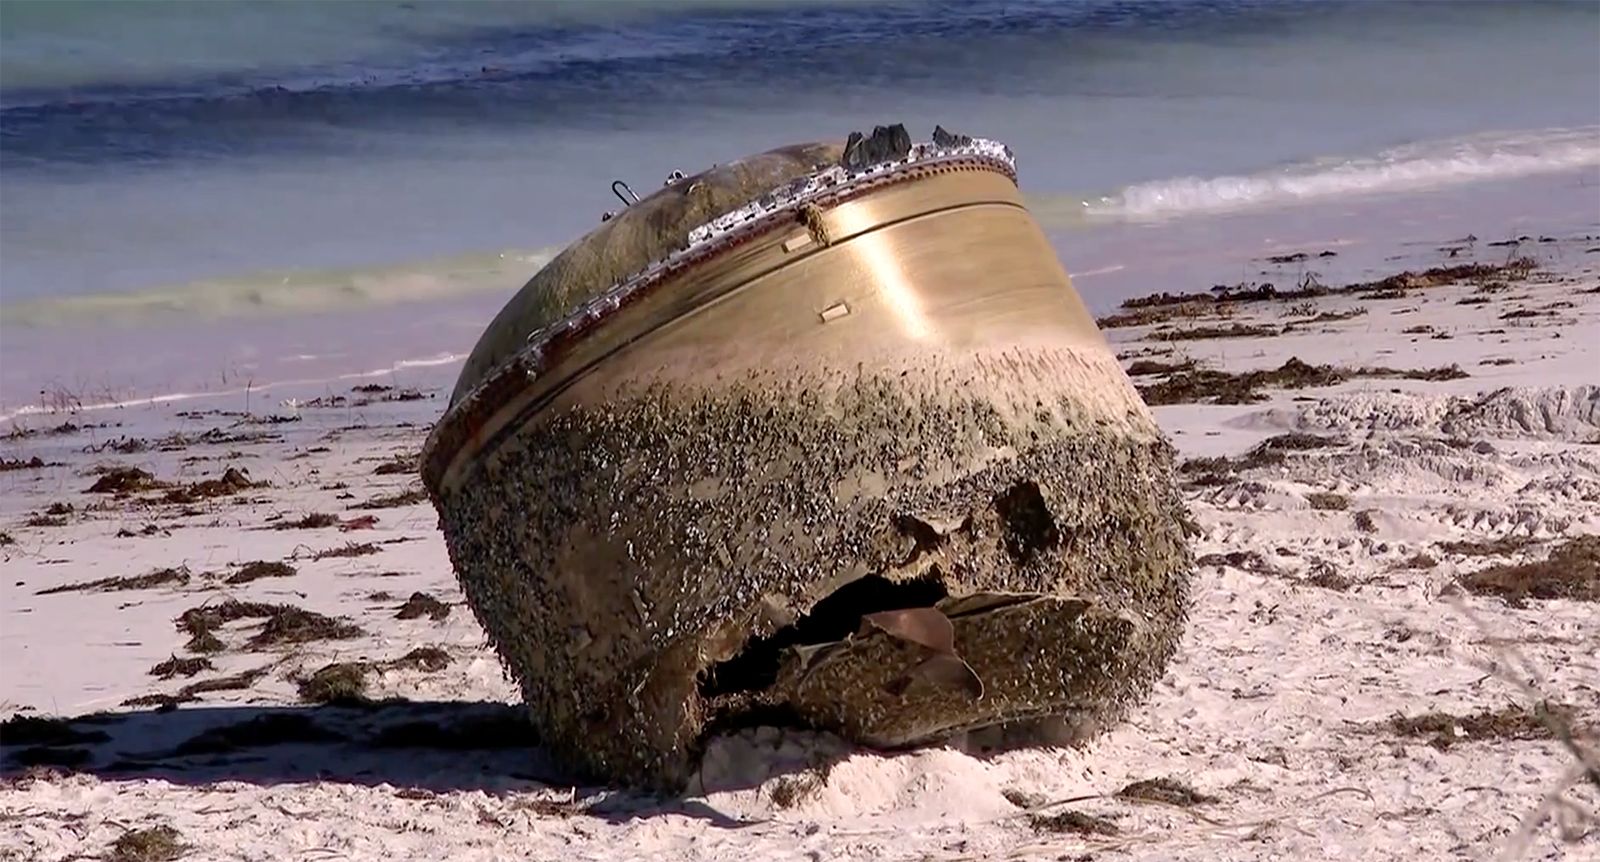 Az ausztrál tengerparton talált rejtélyes fémtárgy egy indiai rakéta alkatrésze